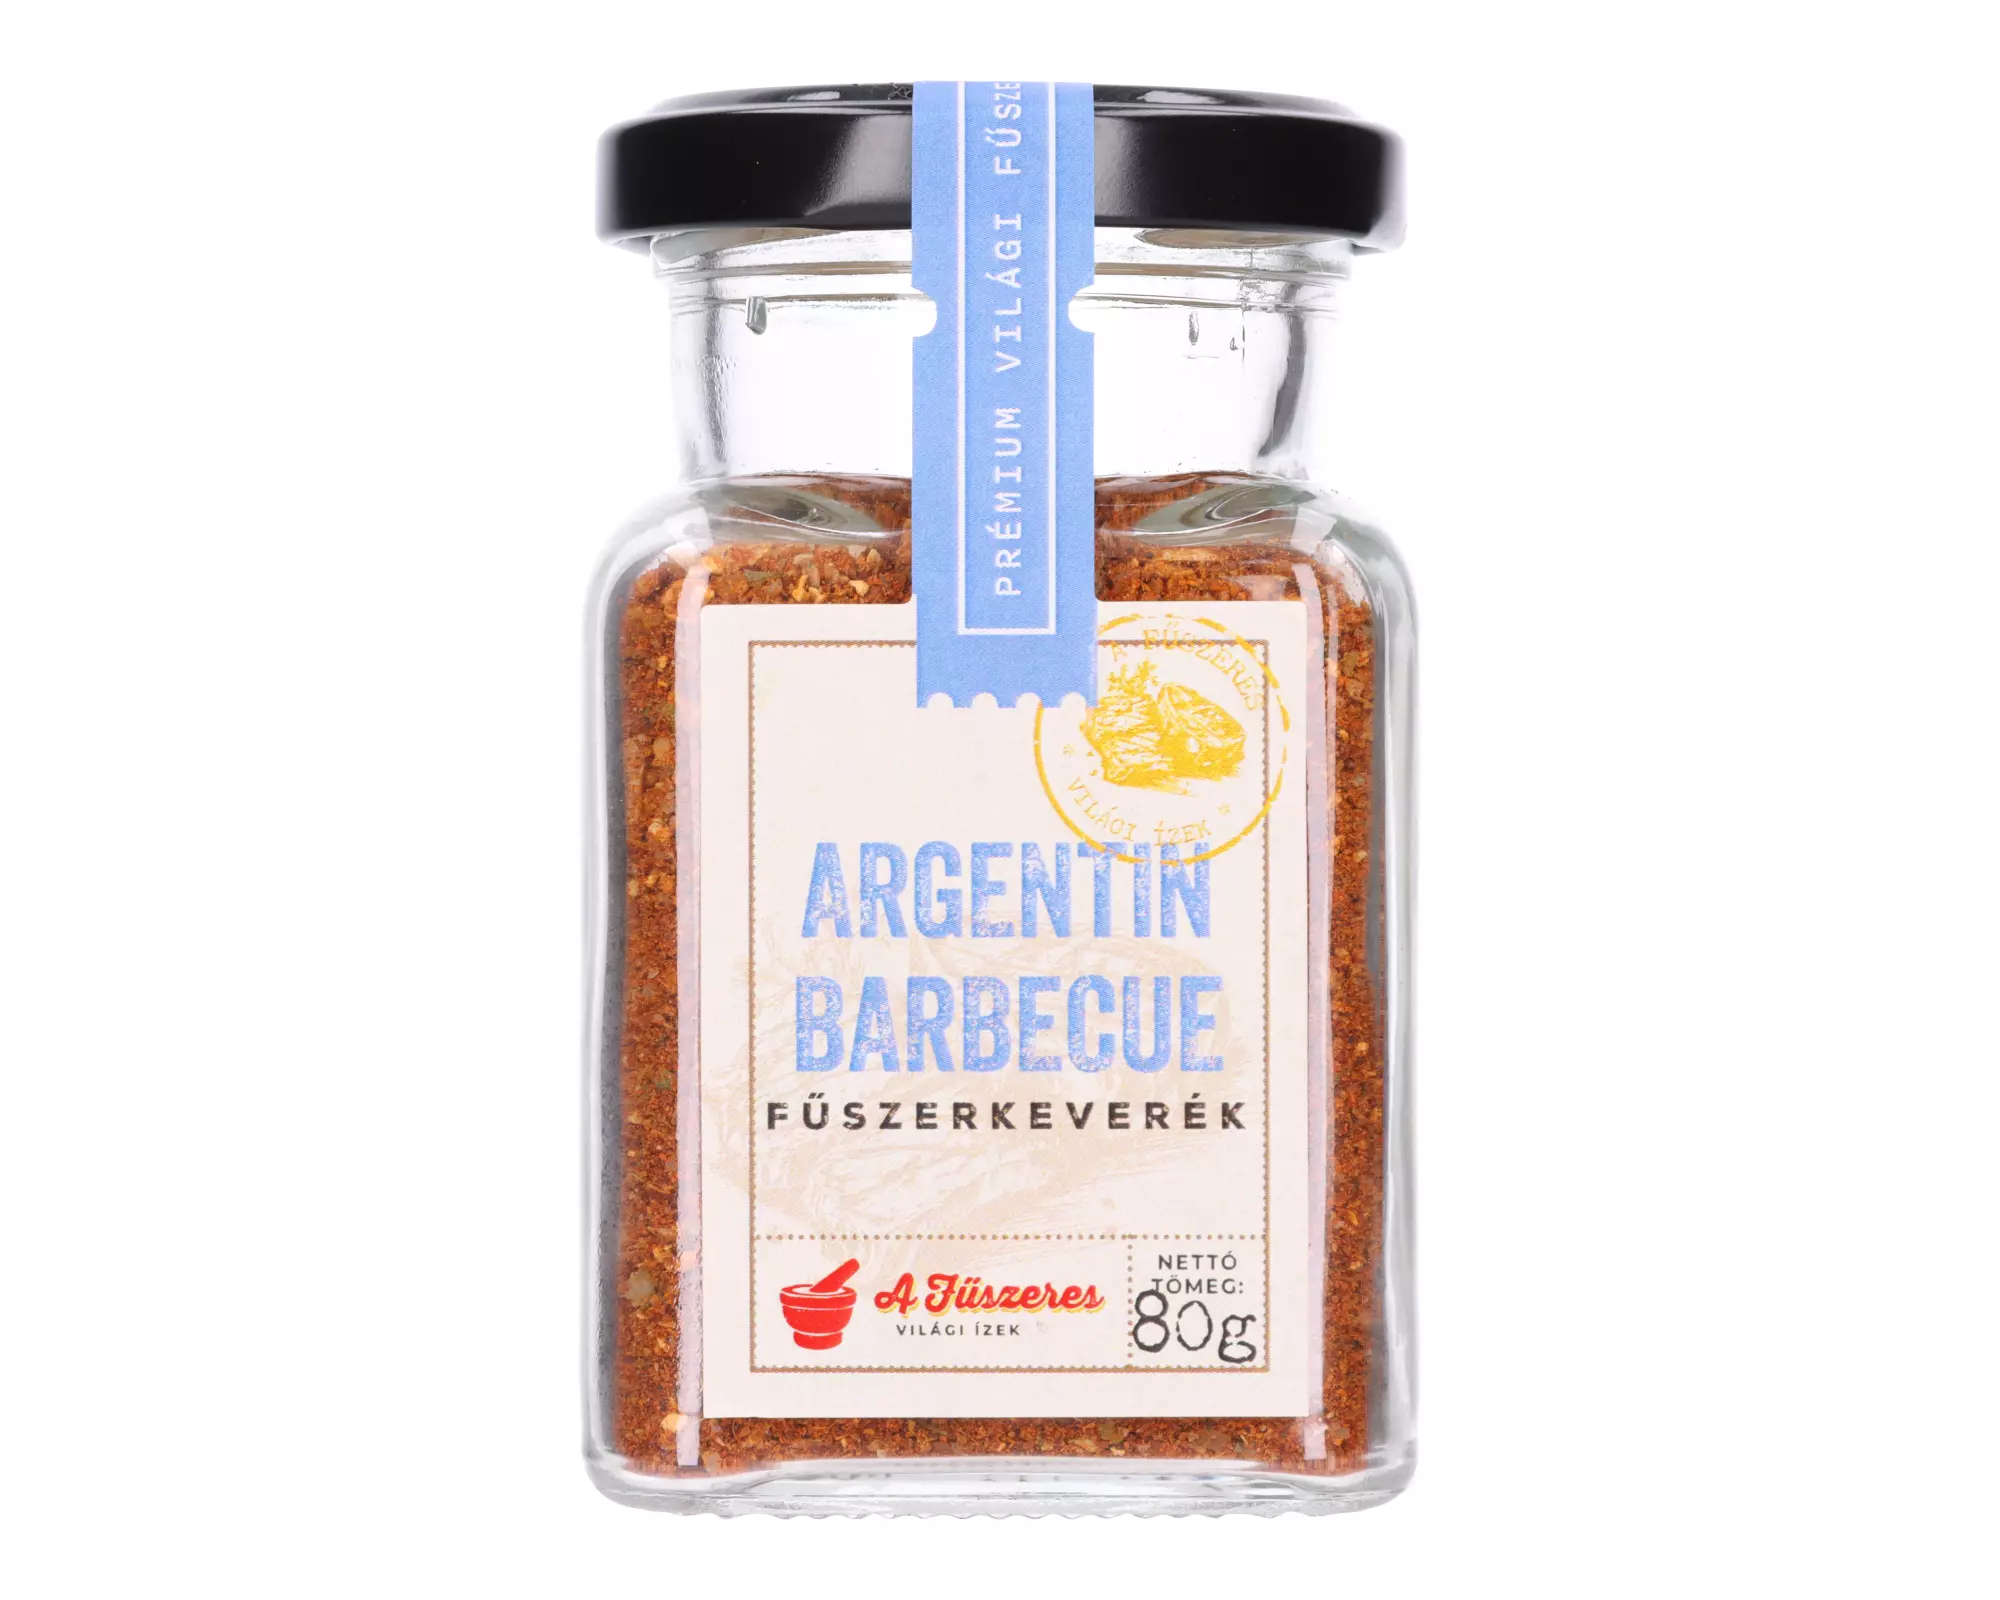 A Fűszeres: Barbecue Argentín fűszerkeverék 80 g